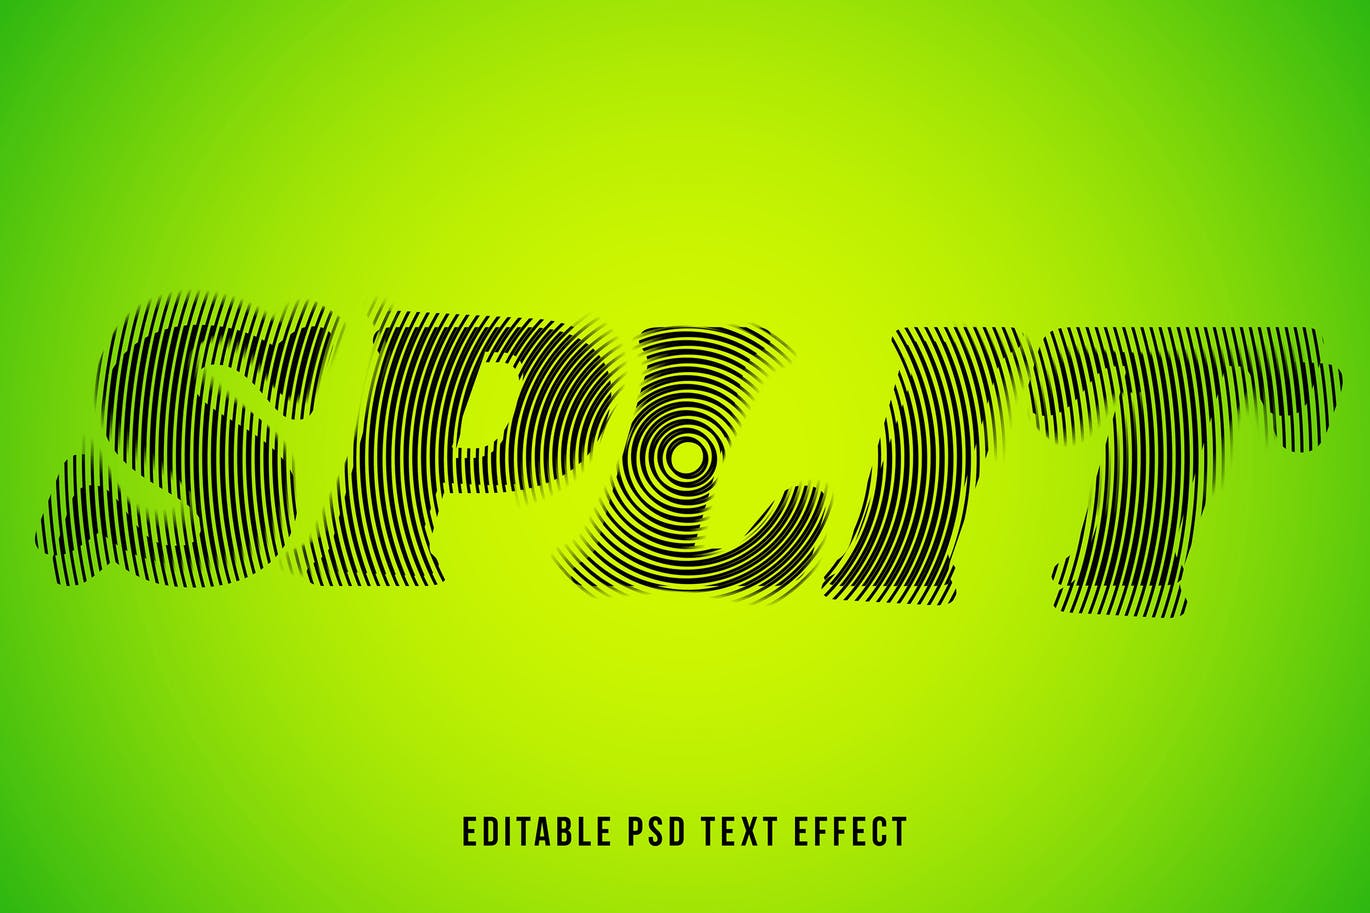 高品质的时尚高端抽象立体文字分割效果字体设计图层样式-PSD